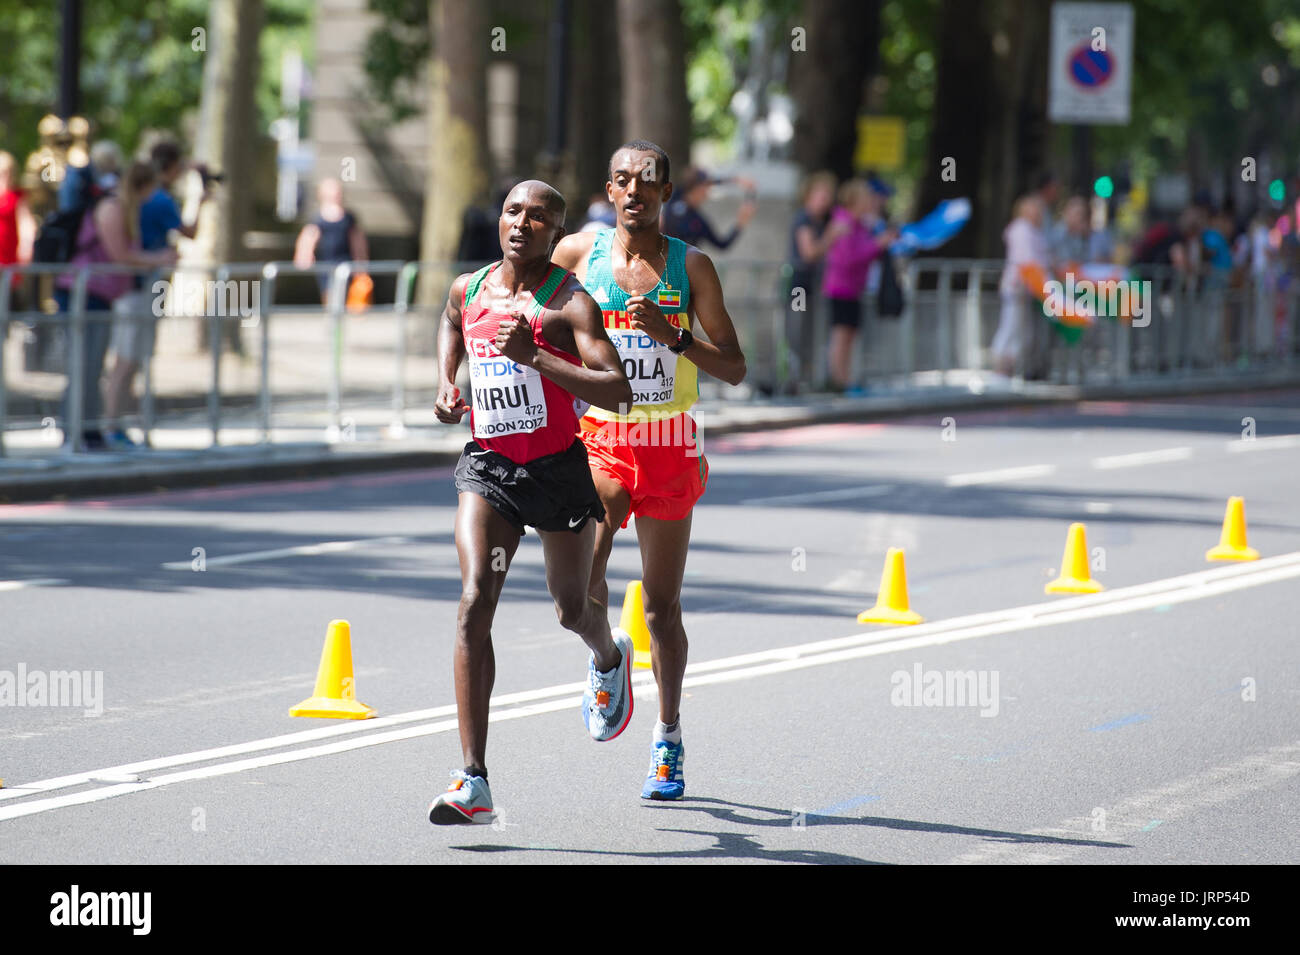 Londres, Royaume-Uni. 6 Août, 2017. Geoffrey Kirui (Kenya) menant Tamirat Tola (Éthiopie) dans les Championnats du monde d'athlétisme IAAF Marathon Hommes Crédit : Phil Swallow Photography/Alamy Live News Banque D'Images